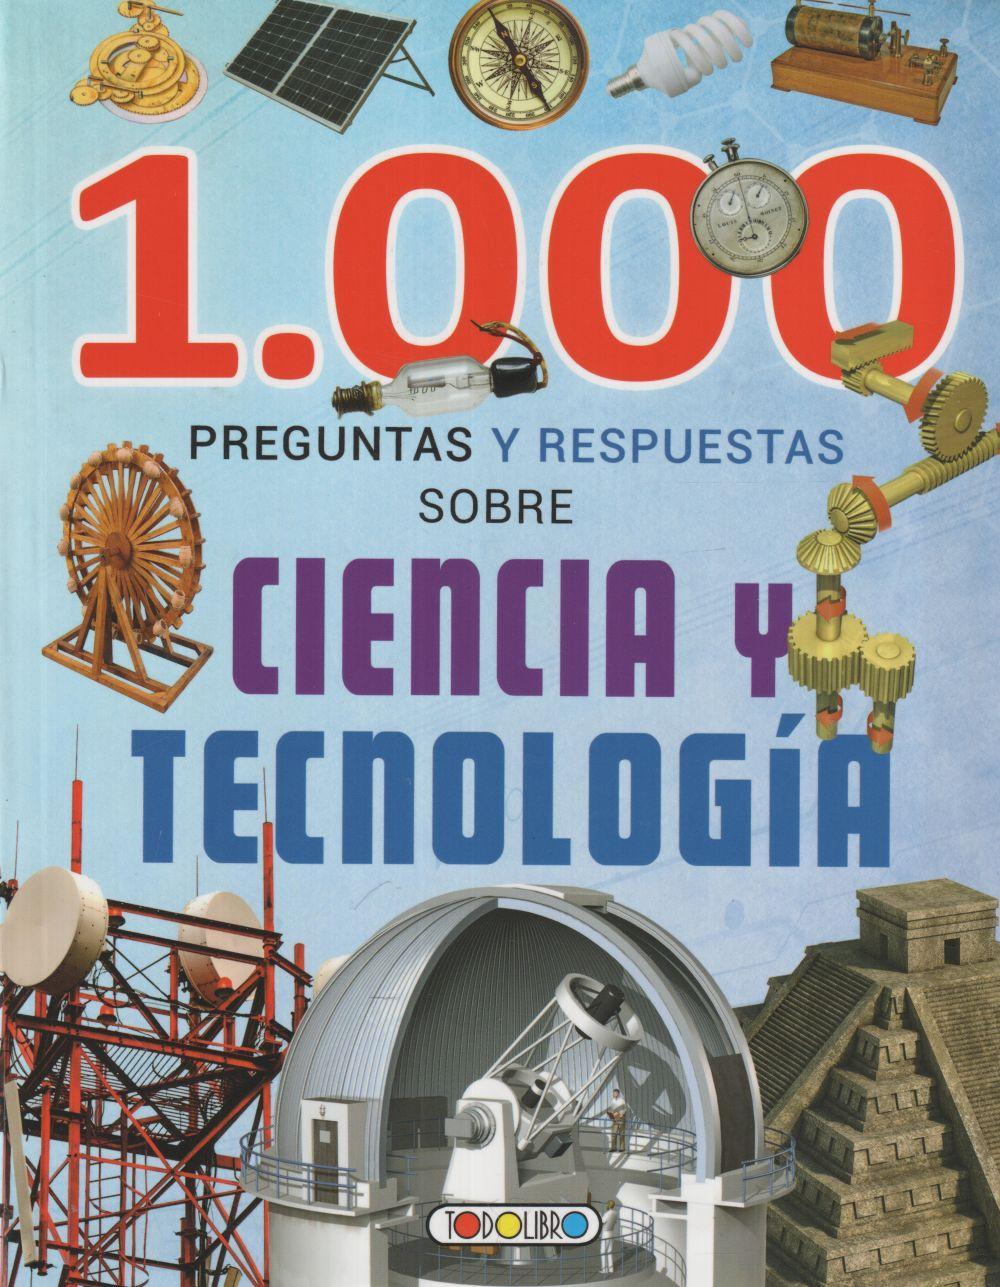 Kniha 1000 PREGUNTAS Y RESPUESTAS SOBRE CIENCIA Y TECNOLOGIA 